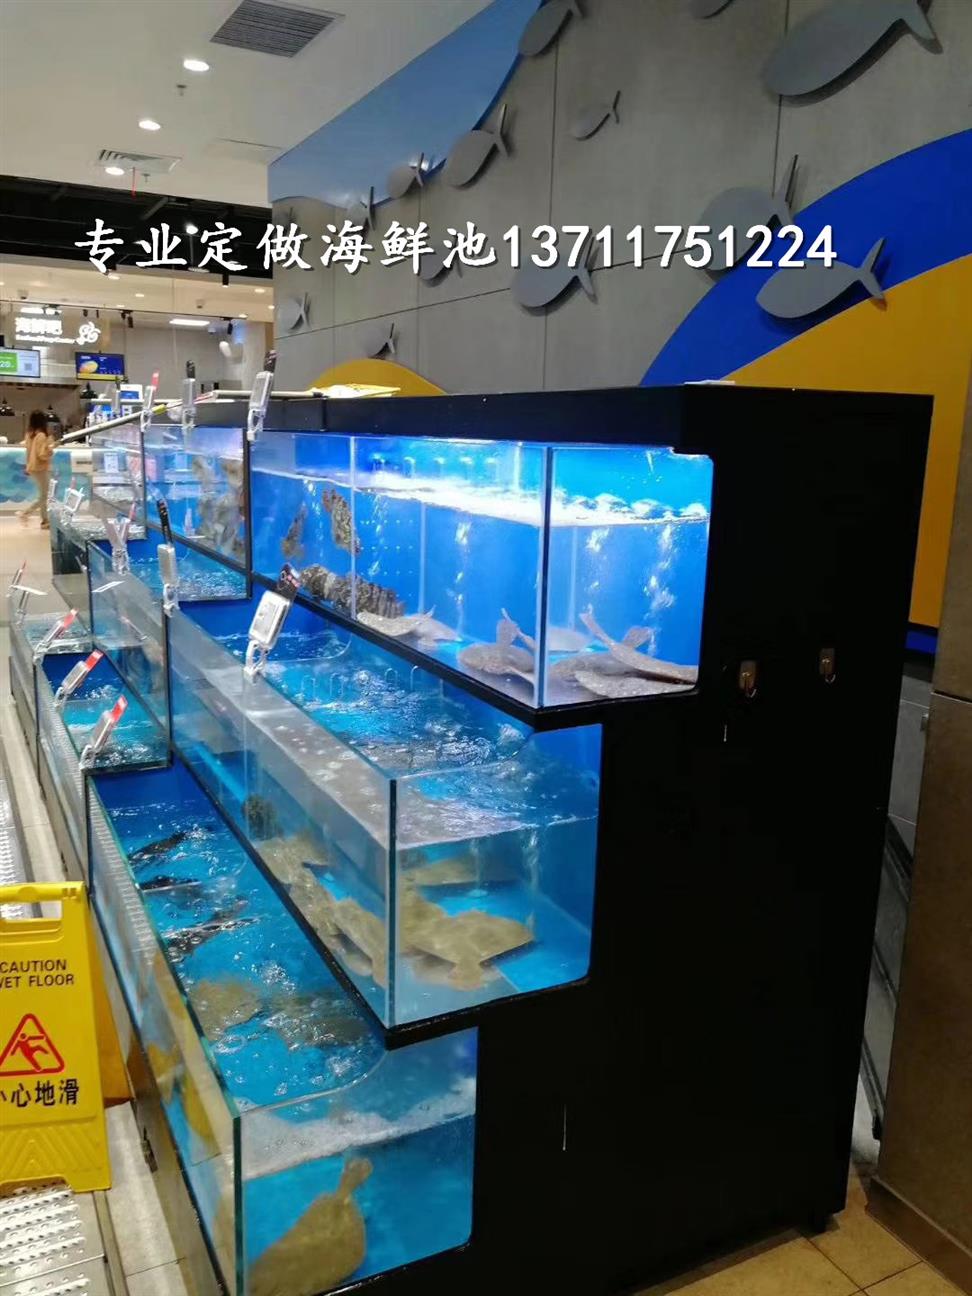 广州登峰玻璃海鲜池公司